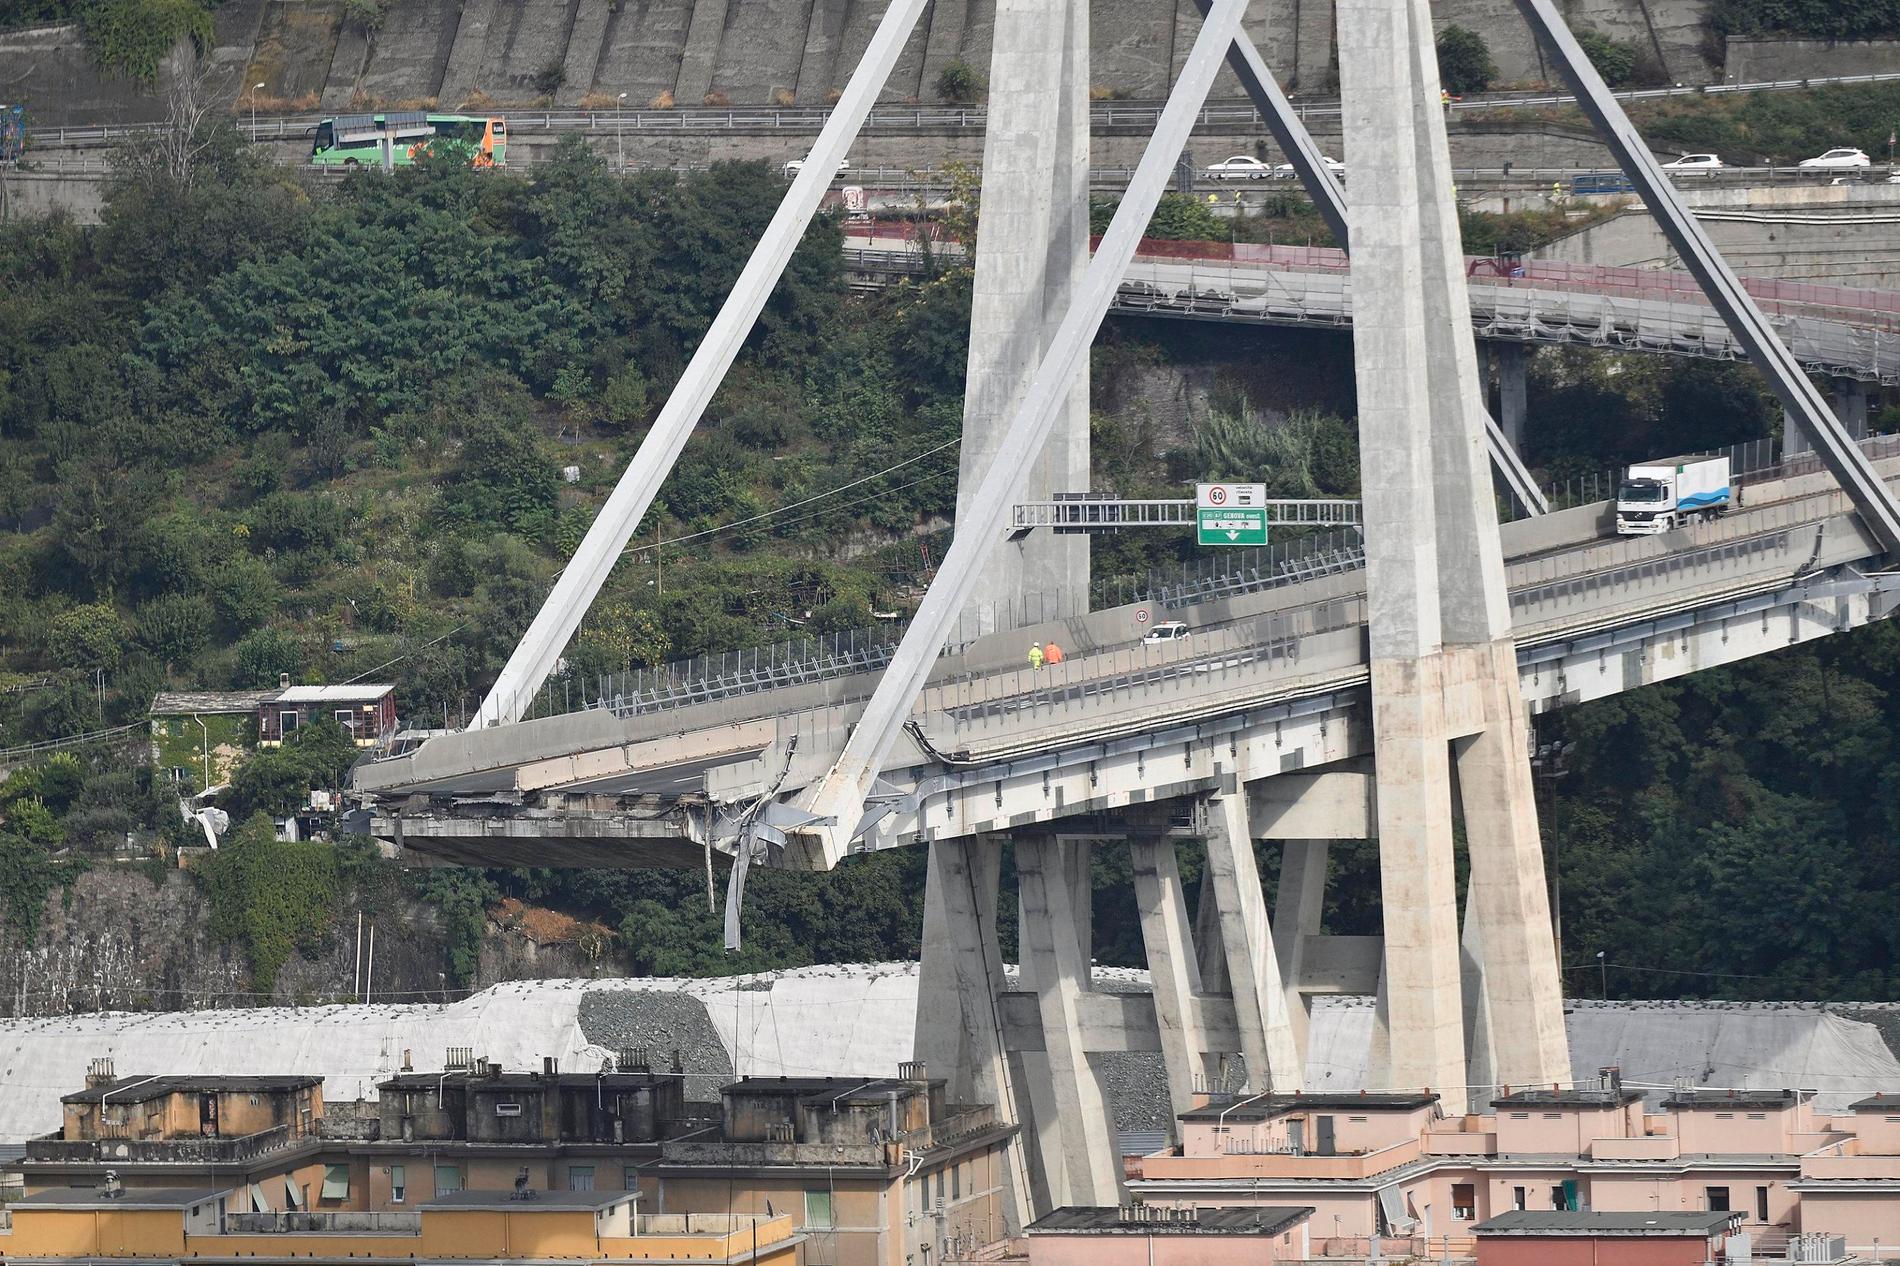 Morandibron i Genua byggdes mellan 1963 och 1967. Vid bärportarna användes Morandis särskilda typ av spännarmerad betong, i stället för de stålvajrar som är praxis i dag vid liknande broar.